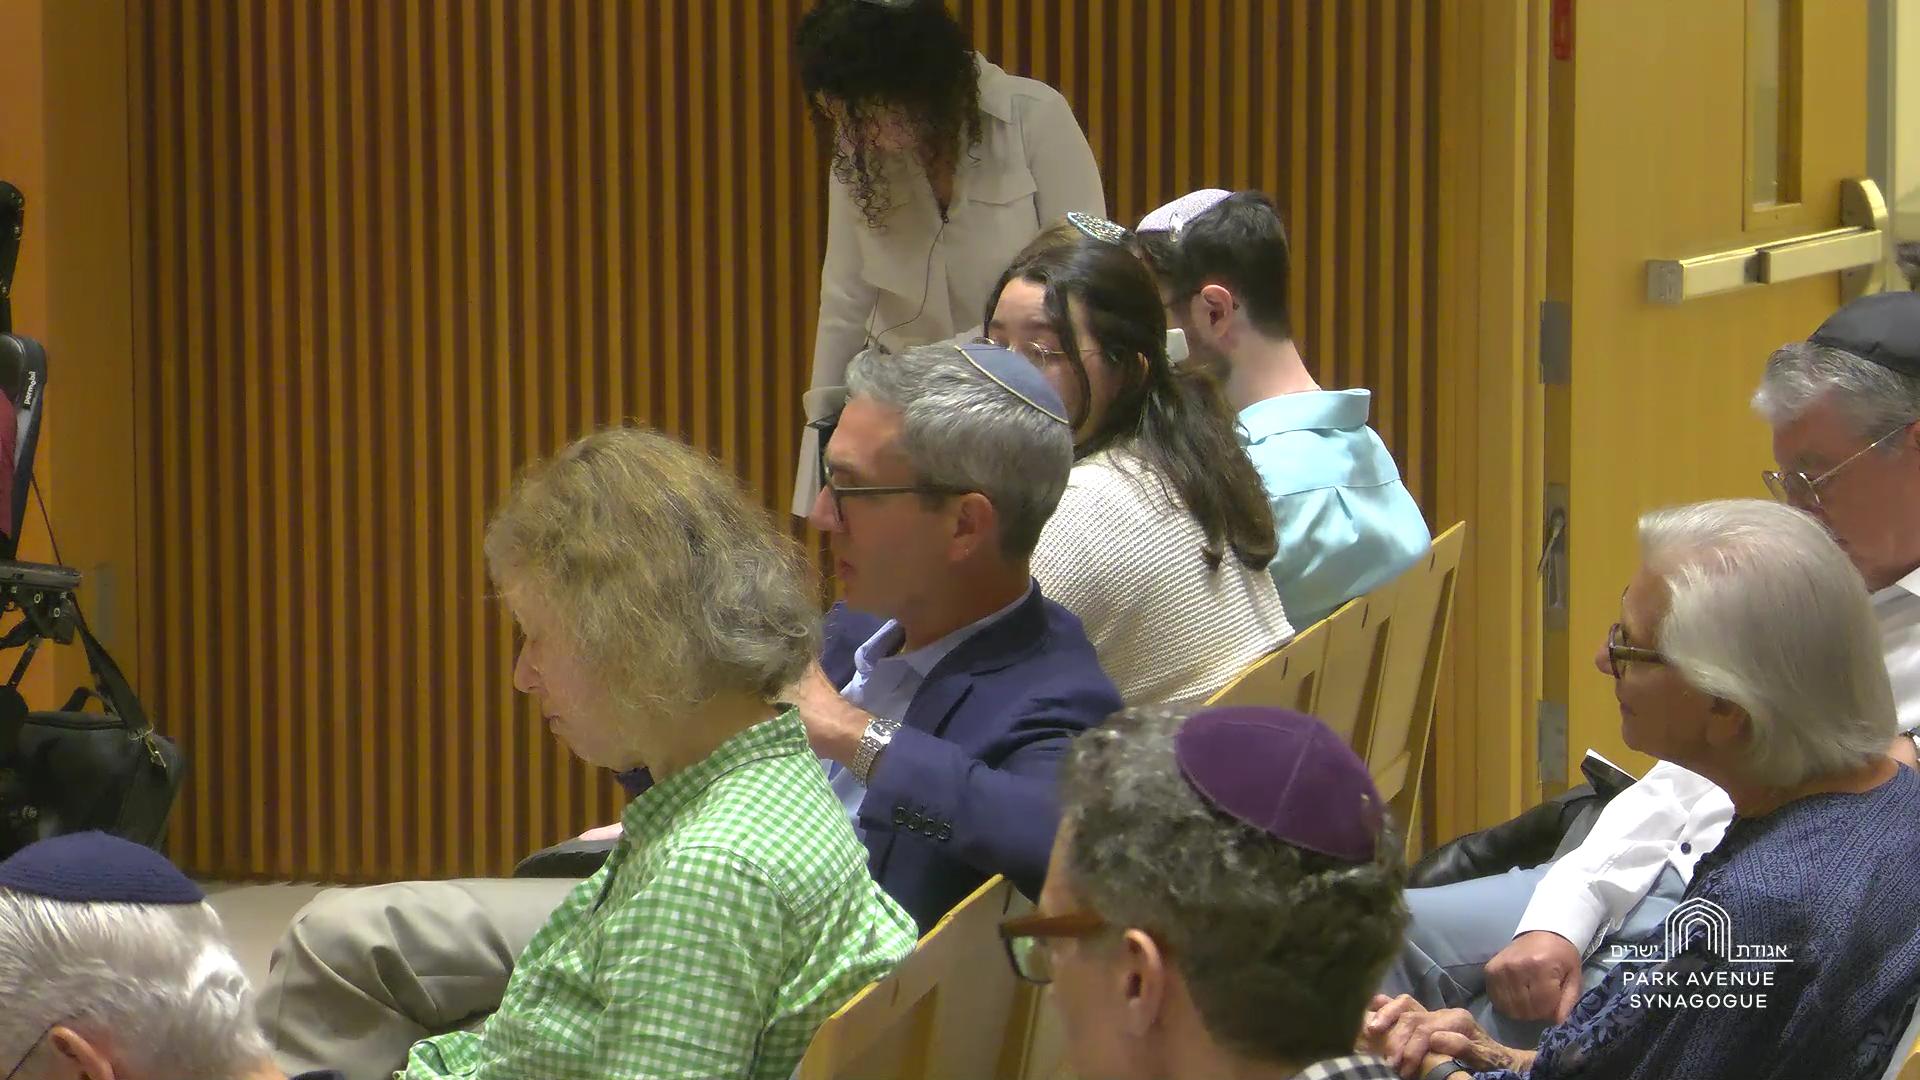 Park Avenue Synagogue Live Stream on Livestream